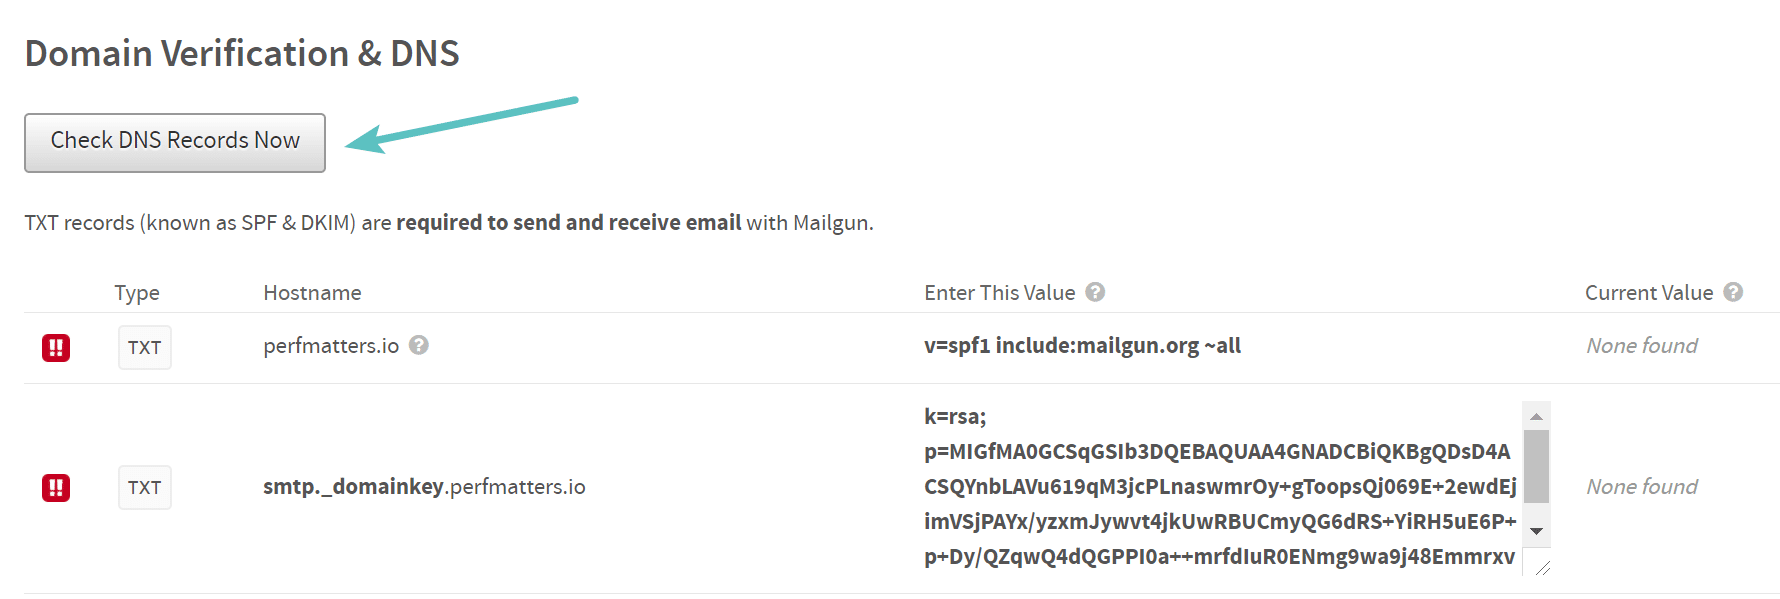 Vérifiez les enregistrements DNS maintenant dans Mailgun